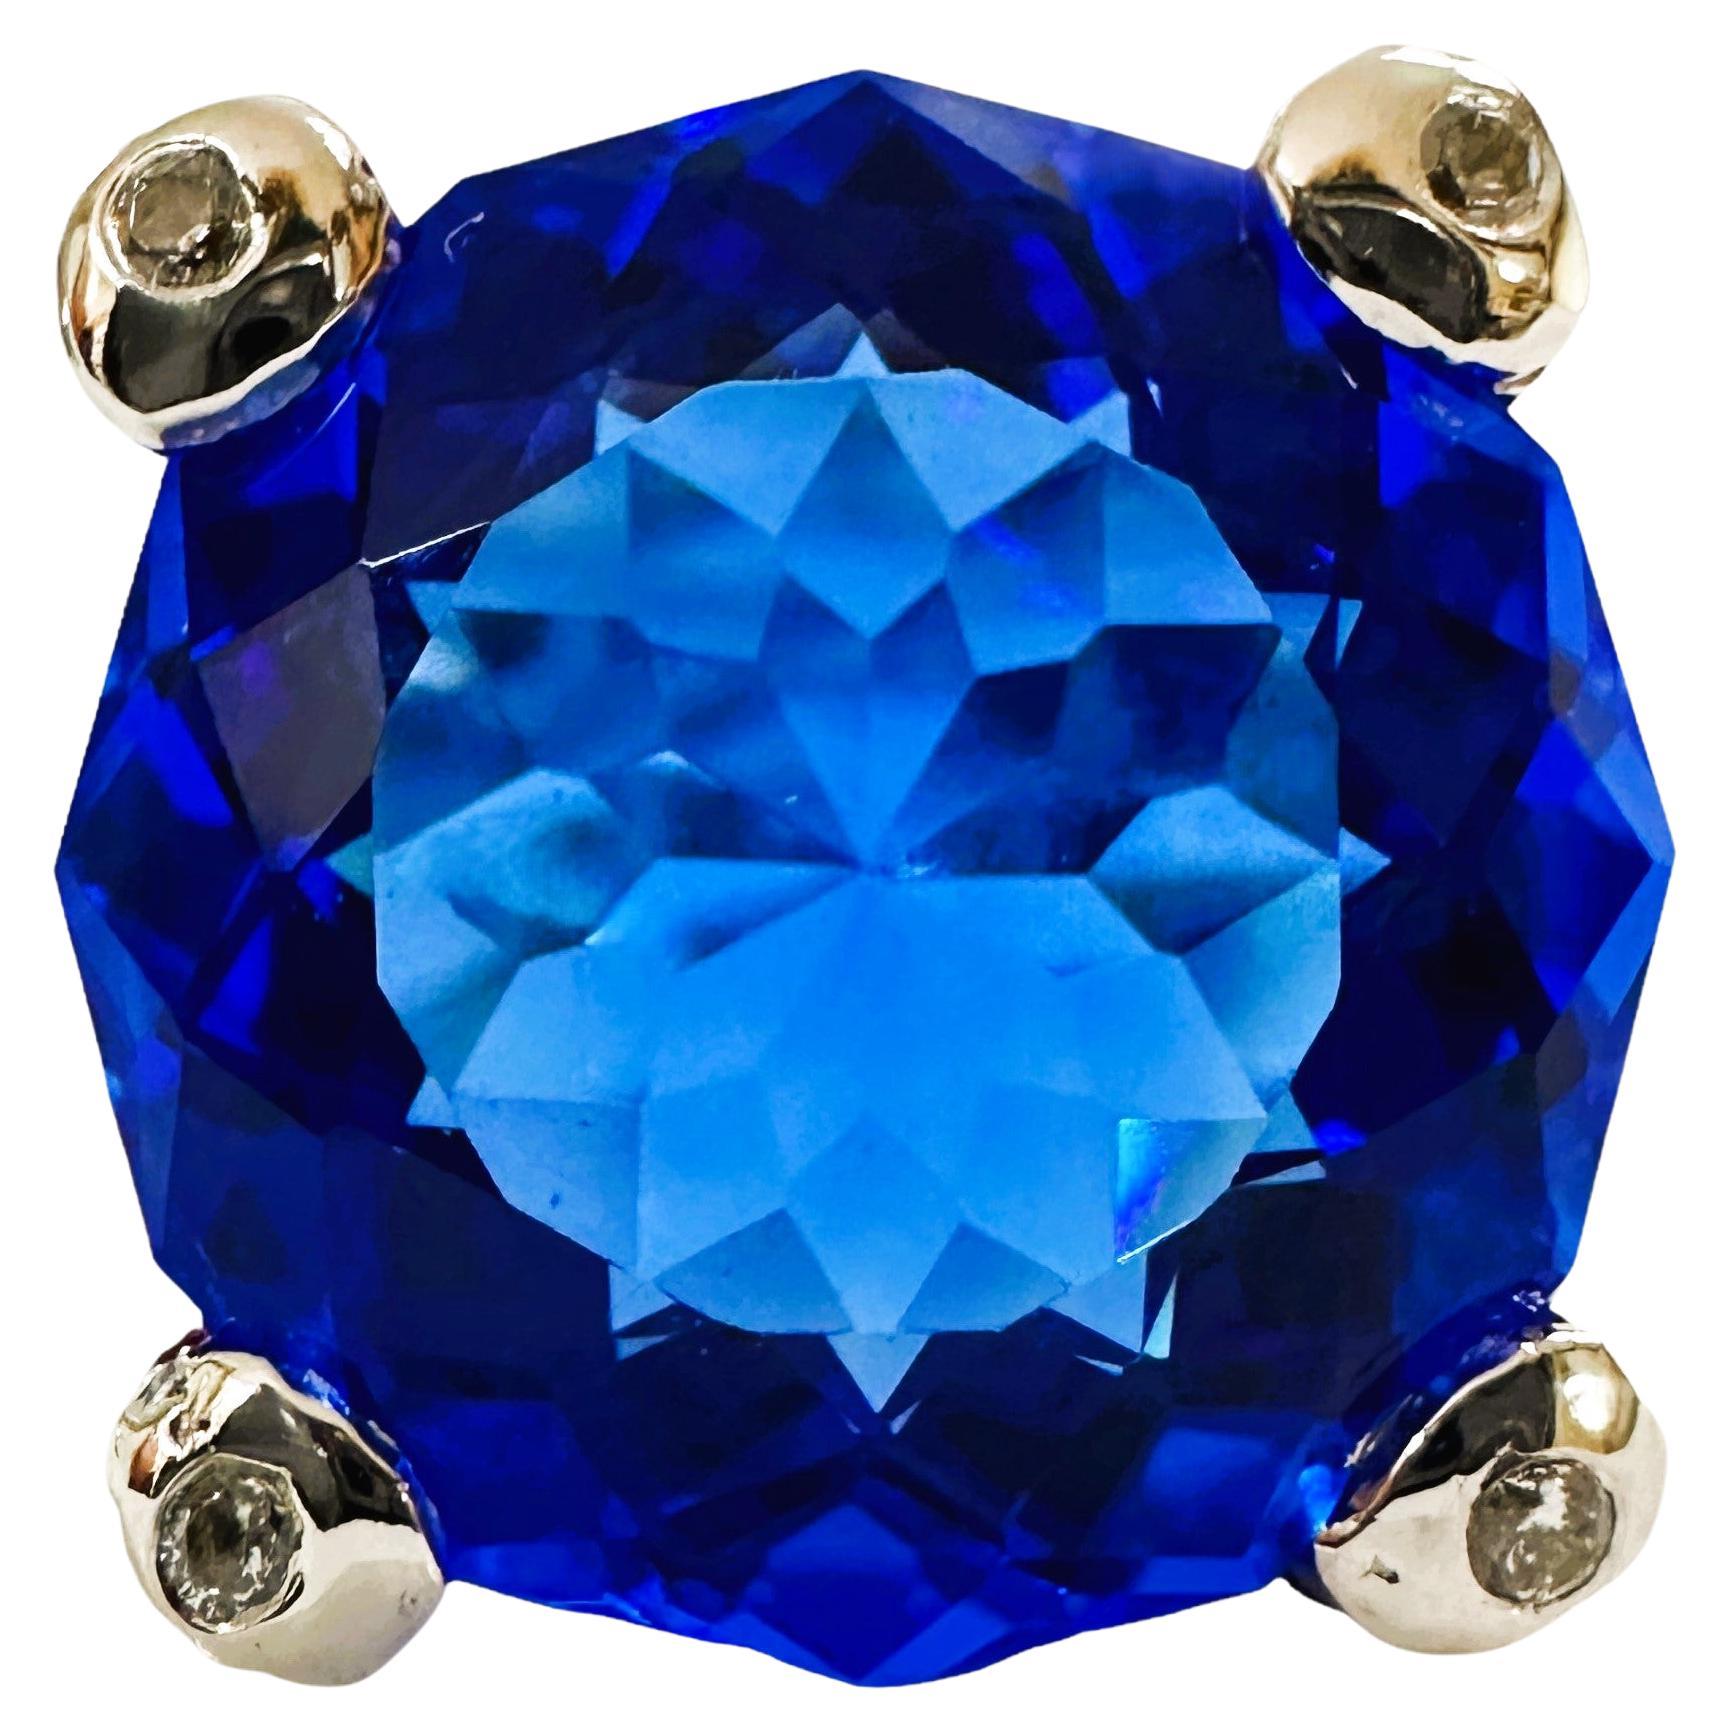 Nuevo anillo africano de 15,3 quilates de topacio azul suizo y zafiro rosa y azul de ley